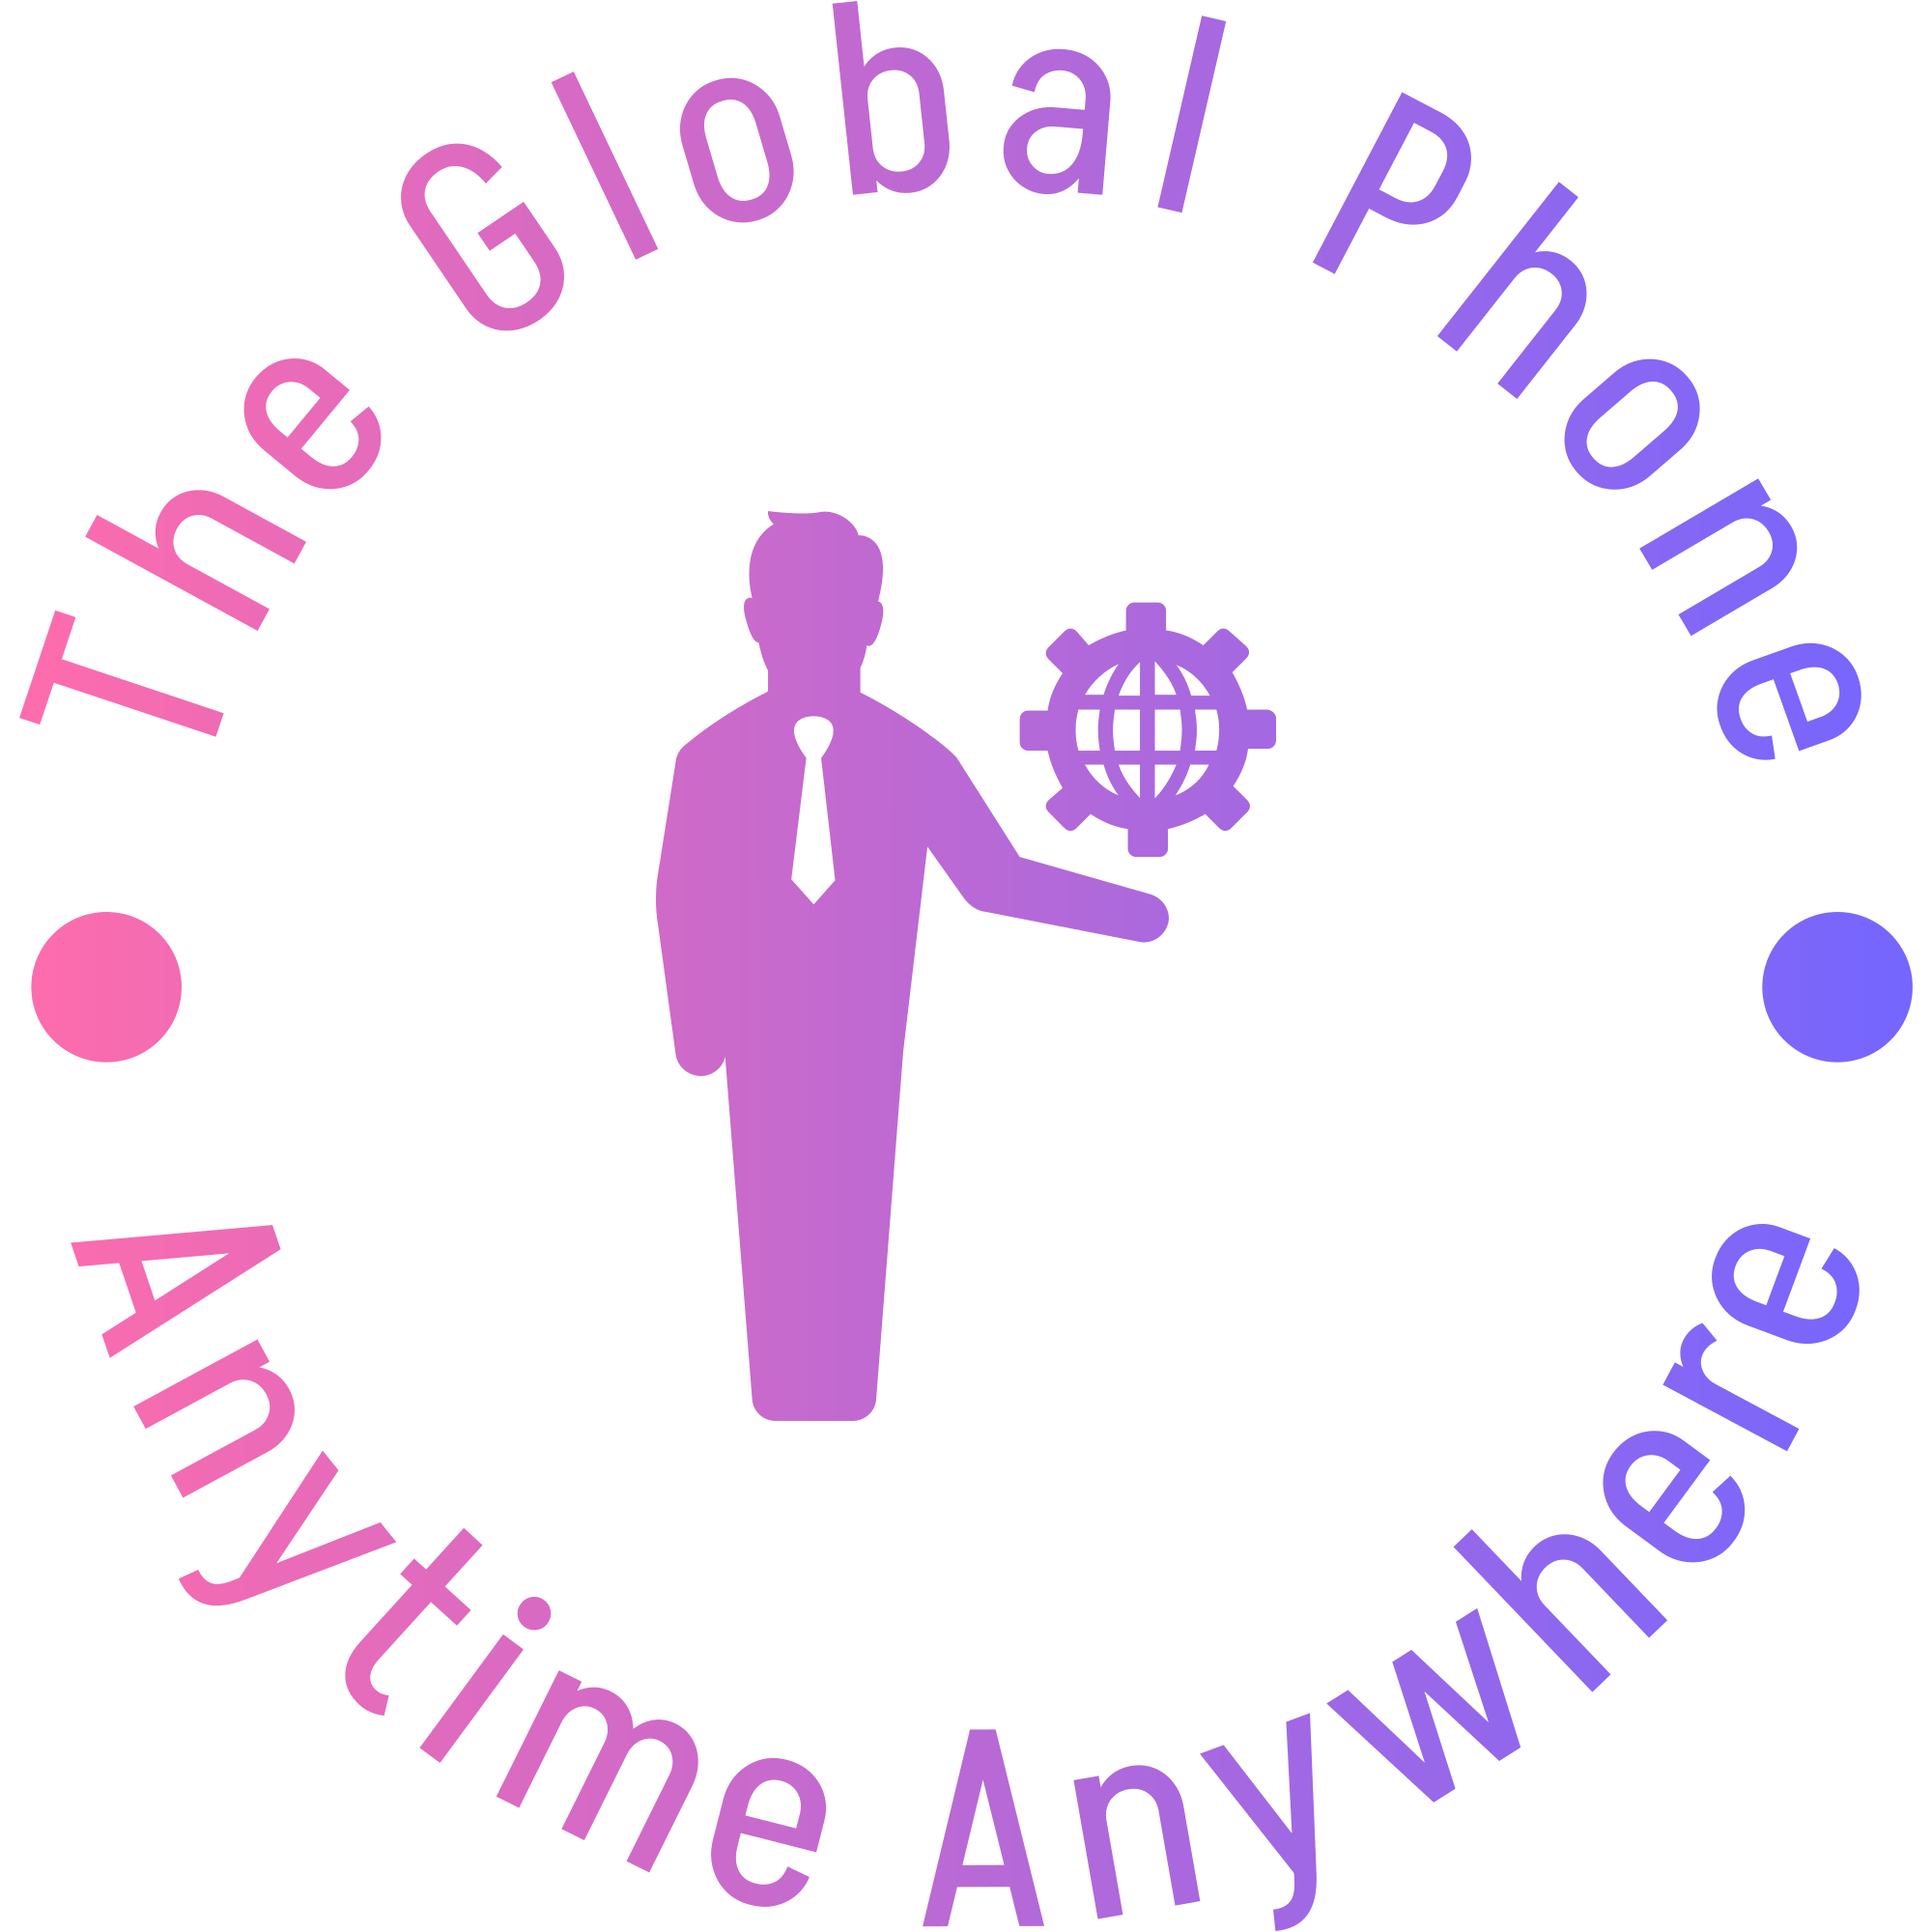 The Global Phone